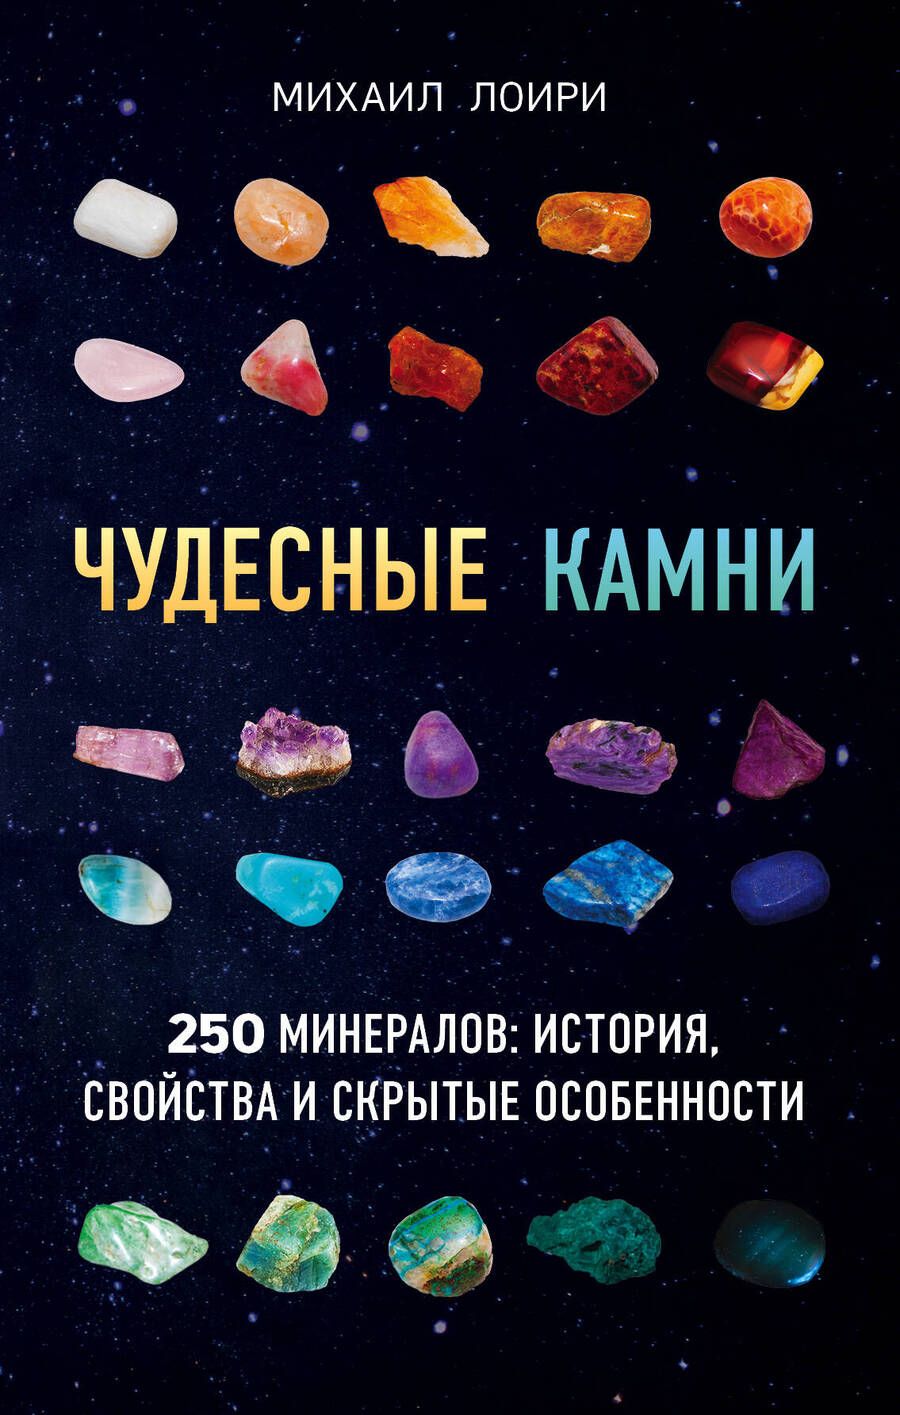 Обложка книги "Лоири: Чудесные камни. 250 минералов: история, свойства, скрытые особенности"